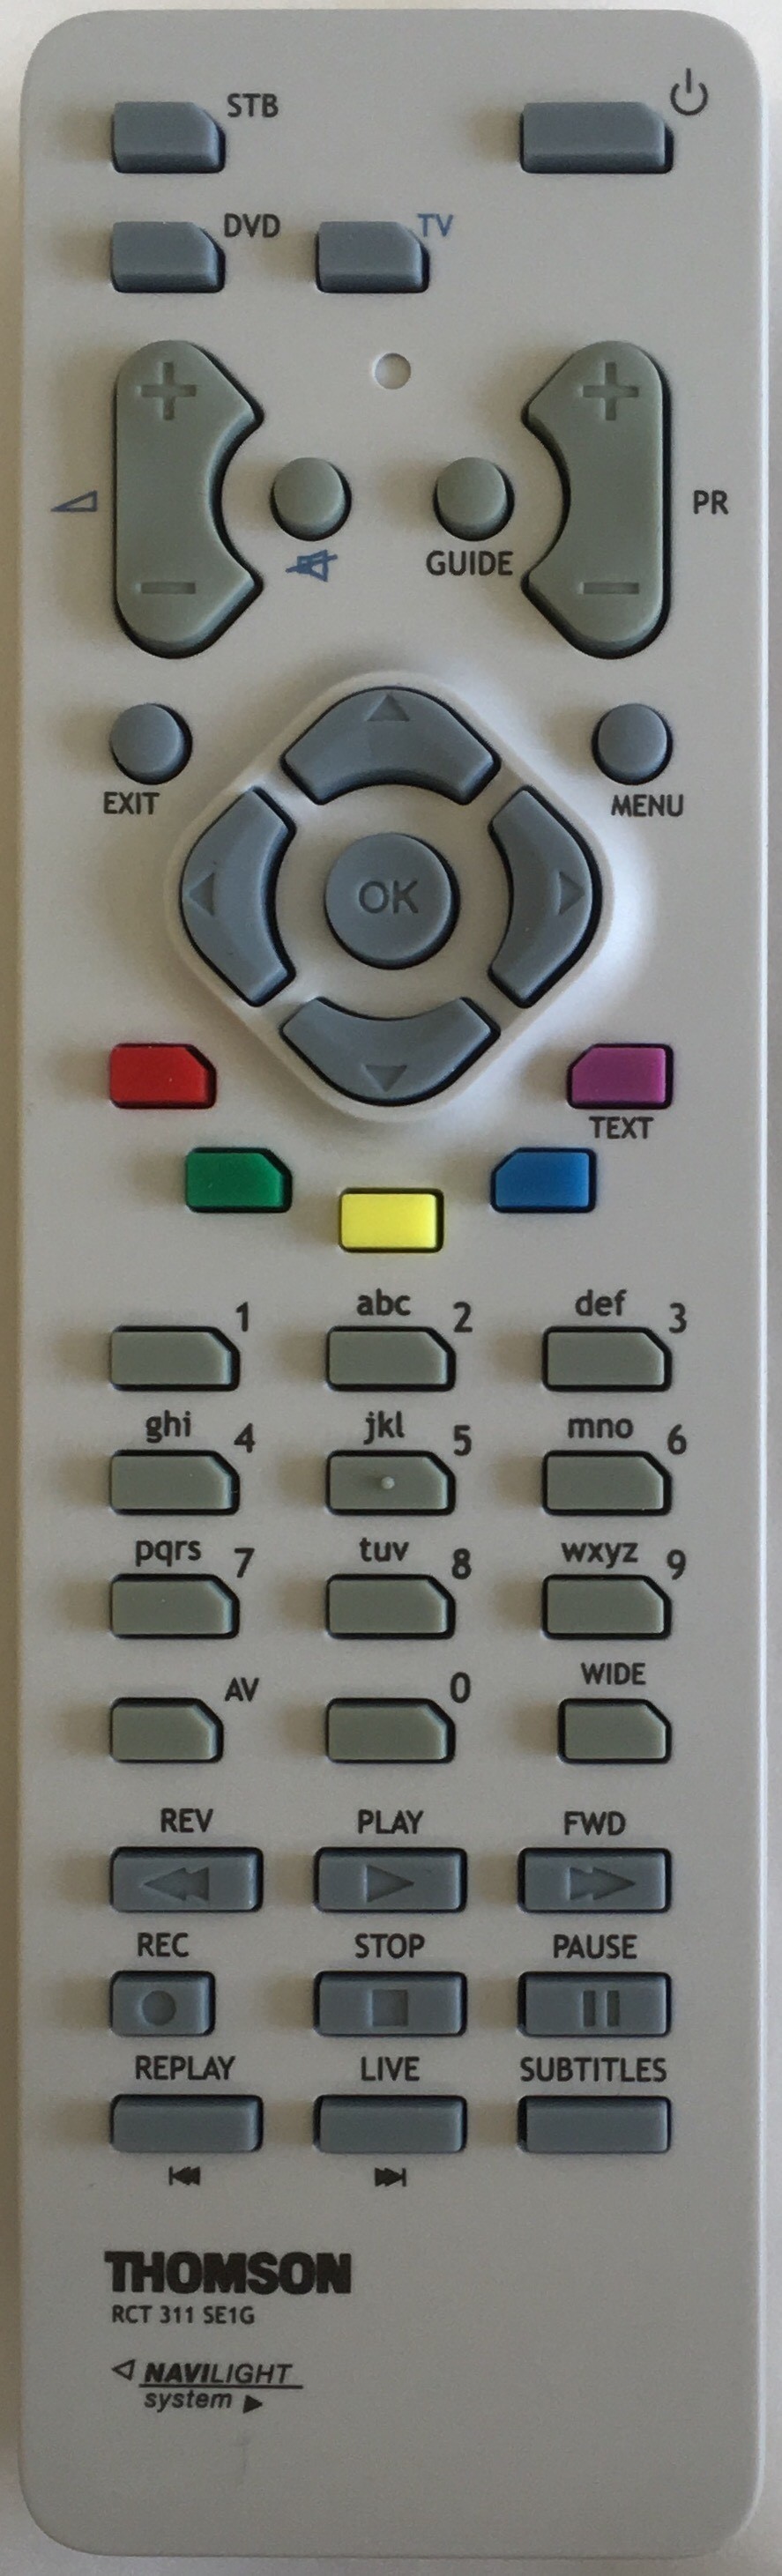 THOMSON DTI2300 Remote Control Original